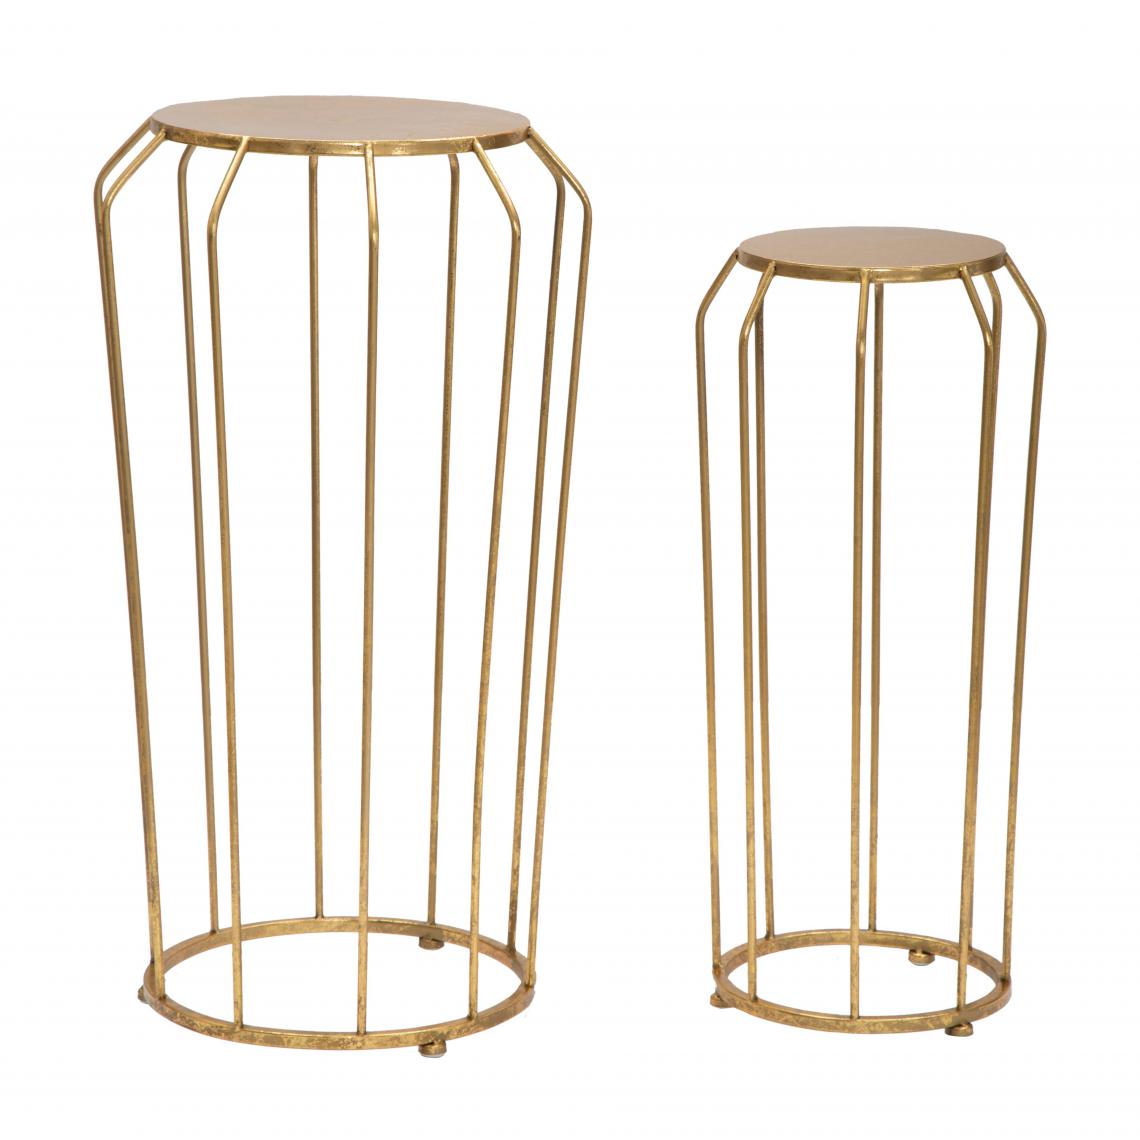 Alter - Paire de tables basses, structure en métal doré, couleur or - Porte-revues